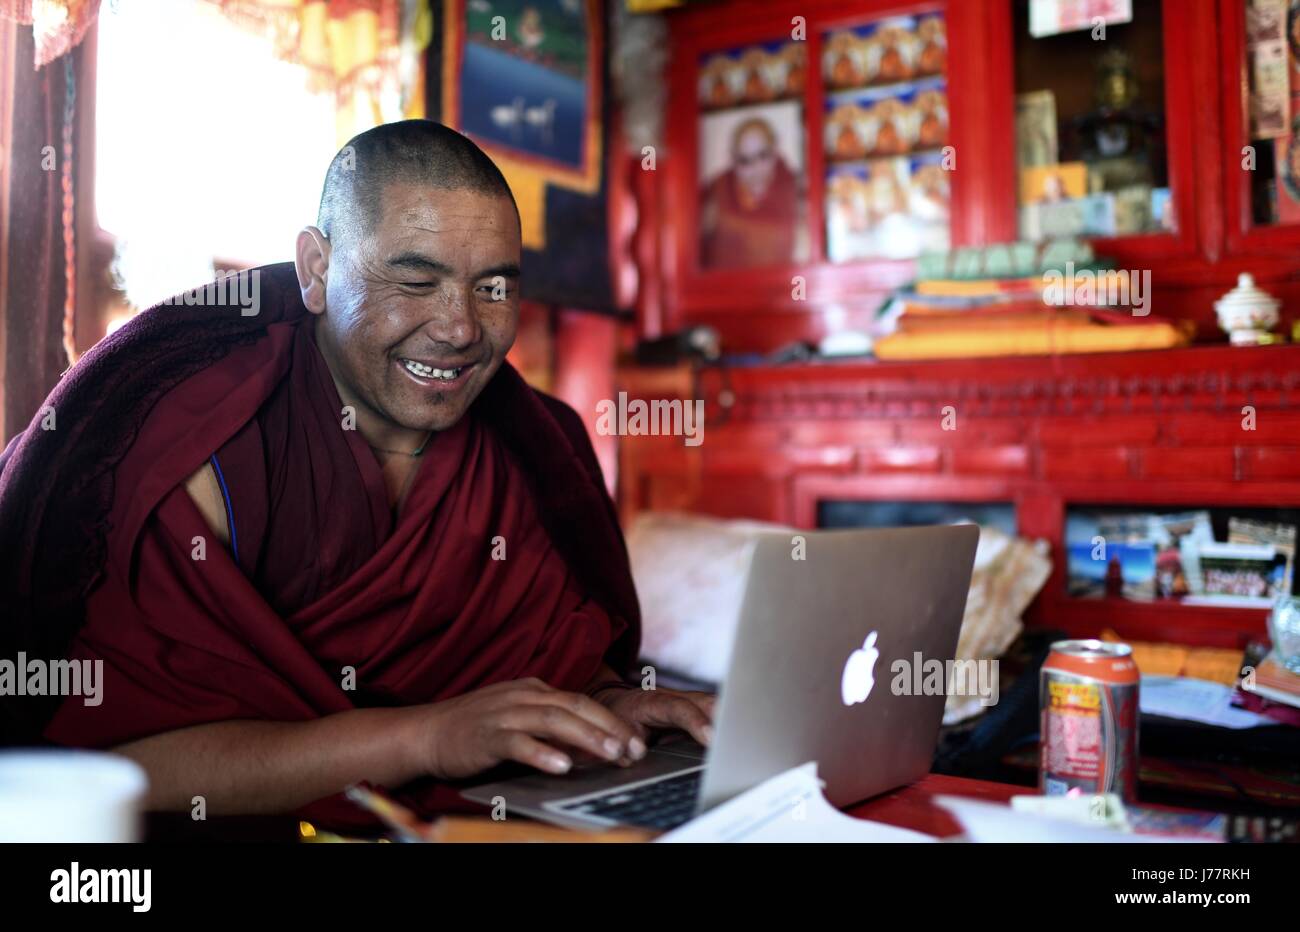 (170524) -- LHASA, 24 de mayo de 2017 (Xinhua) -- Lama Ngawang prácticas Peljor escribiendo en el monasterio Rongpu cerca del monte Qomolangma en el suroeste de la Región Autónoma del Tíbet de China, 17 de mayo de 2017. Rongpu Monasterio, el monasterio más alto del mundo a más de 5.000 metros de altitud, situado al pie del monte Qomolangma en Tingri Condado. Los 36 años de edad, Ngawang Peljor ha practicado el budismo en el monasterio durante 15 años. Vive un simple y regular la vida monástica aquí. Levantarse a las 8:30 a.m., entona después del desayuno hasta las 12.00. Él sigue cantando hasta las 4 p.m. después de una hora de descanso para almorzar. Después dinn Foto de stock